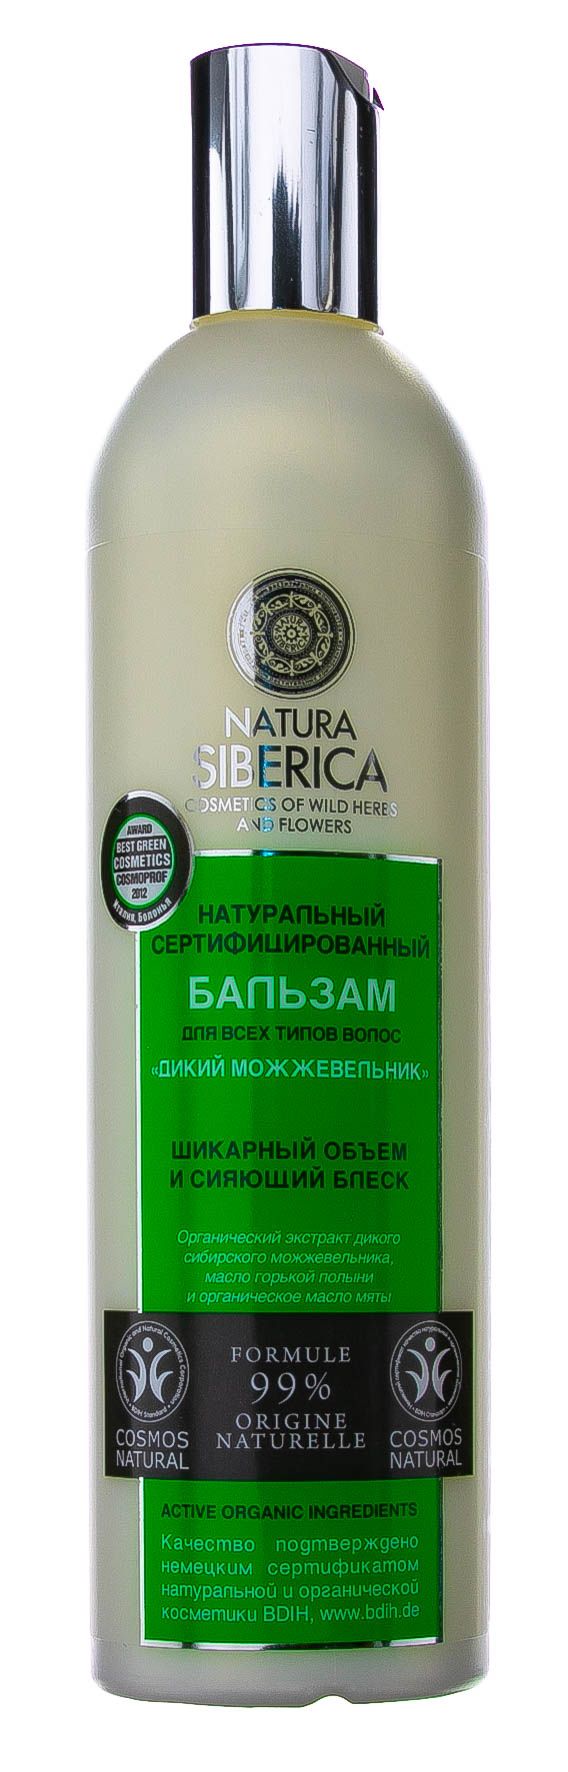 Natura siberica маска для волос дикий можжевельник 370 мл